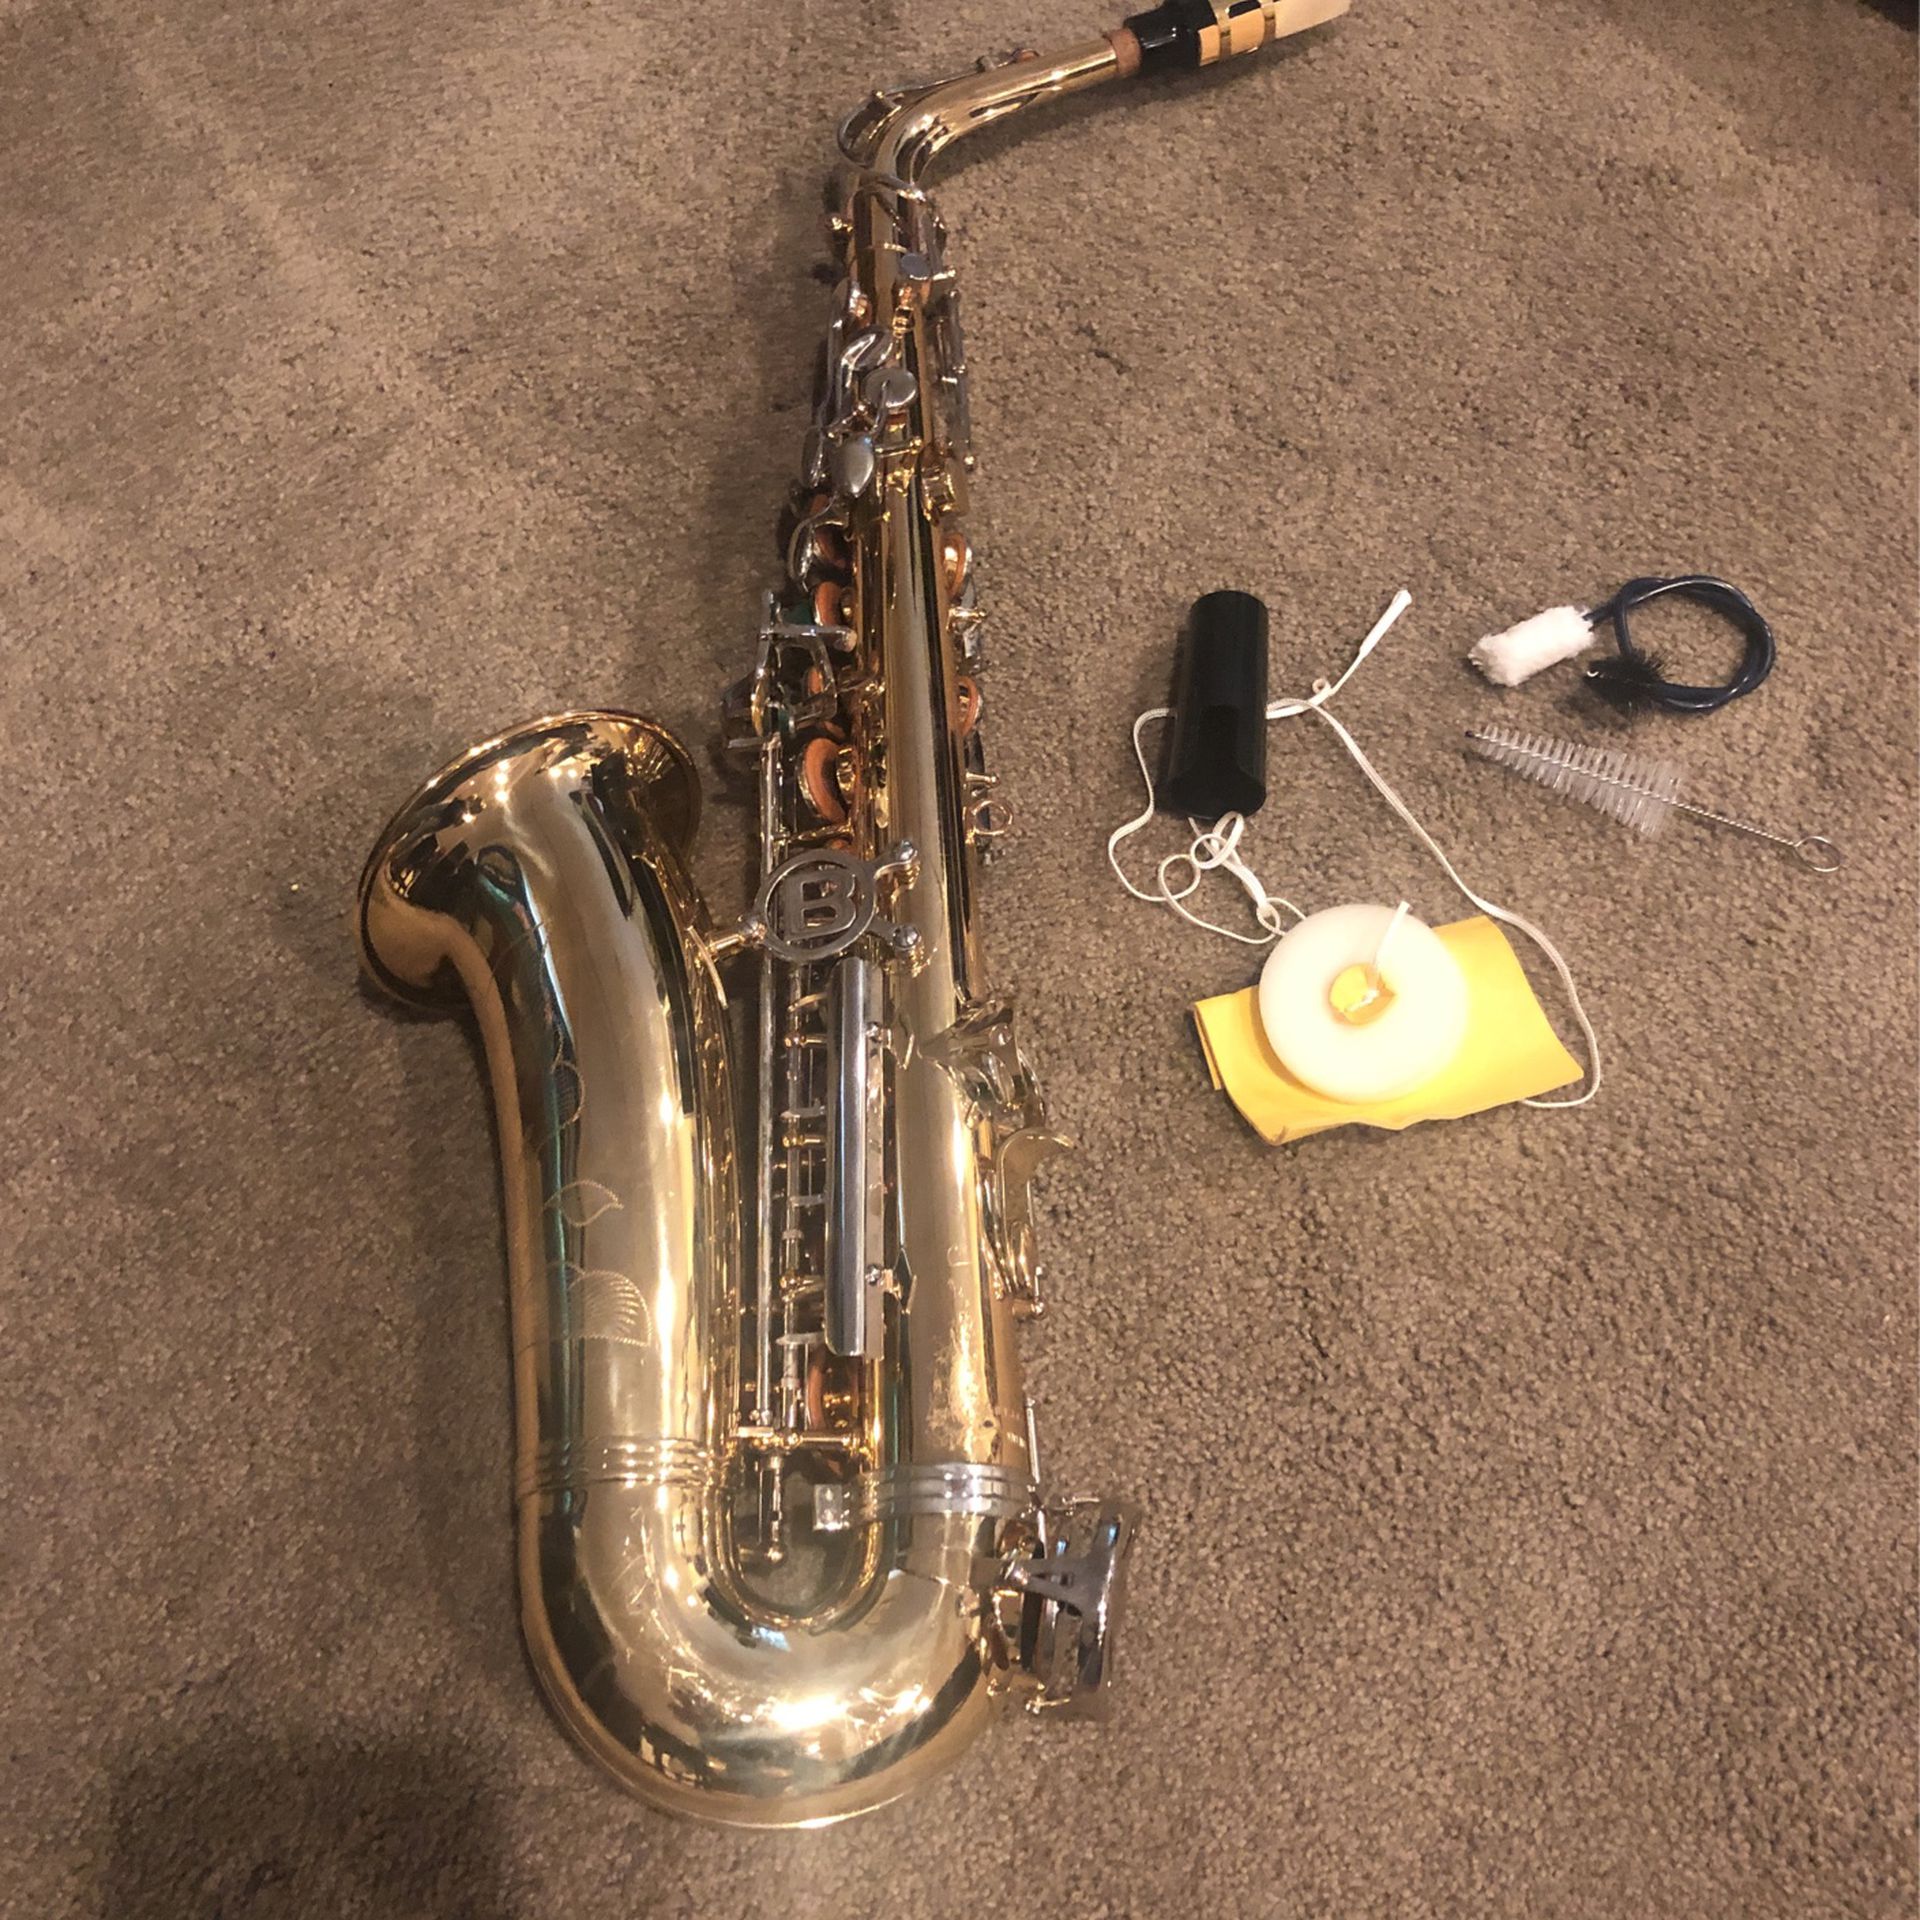 Bundy Alto Saxophone